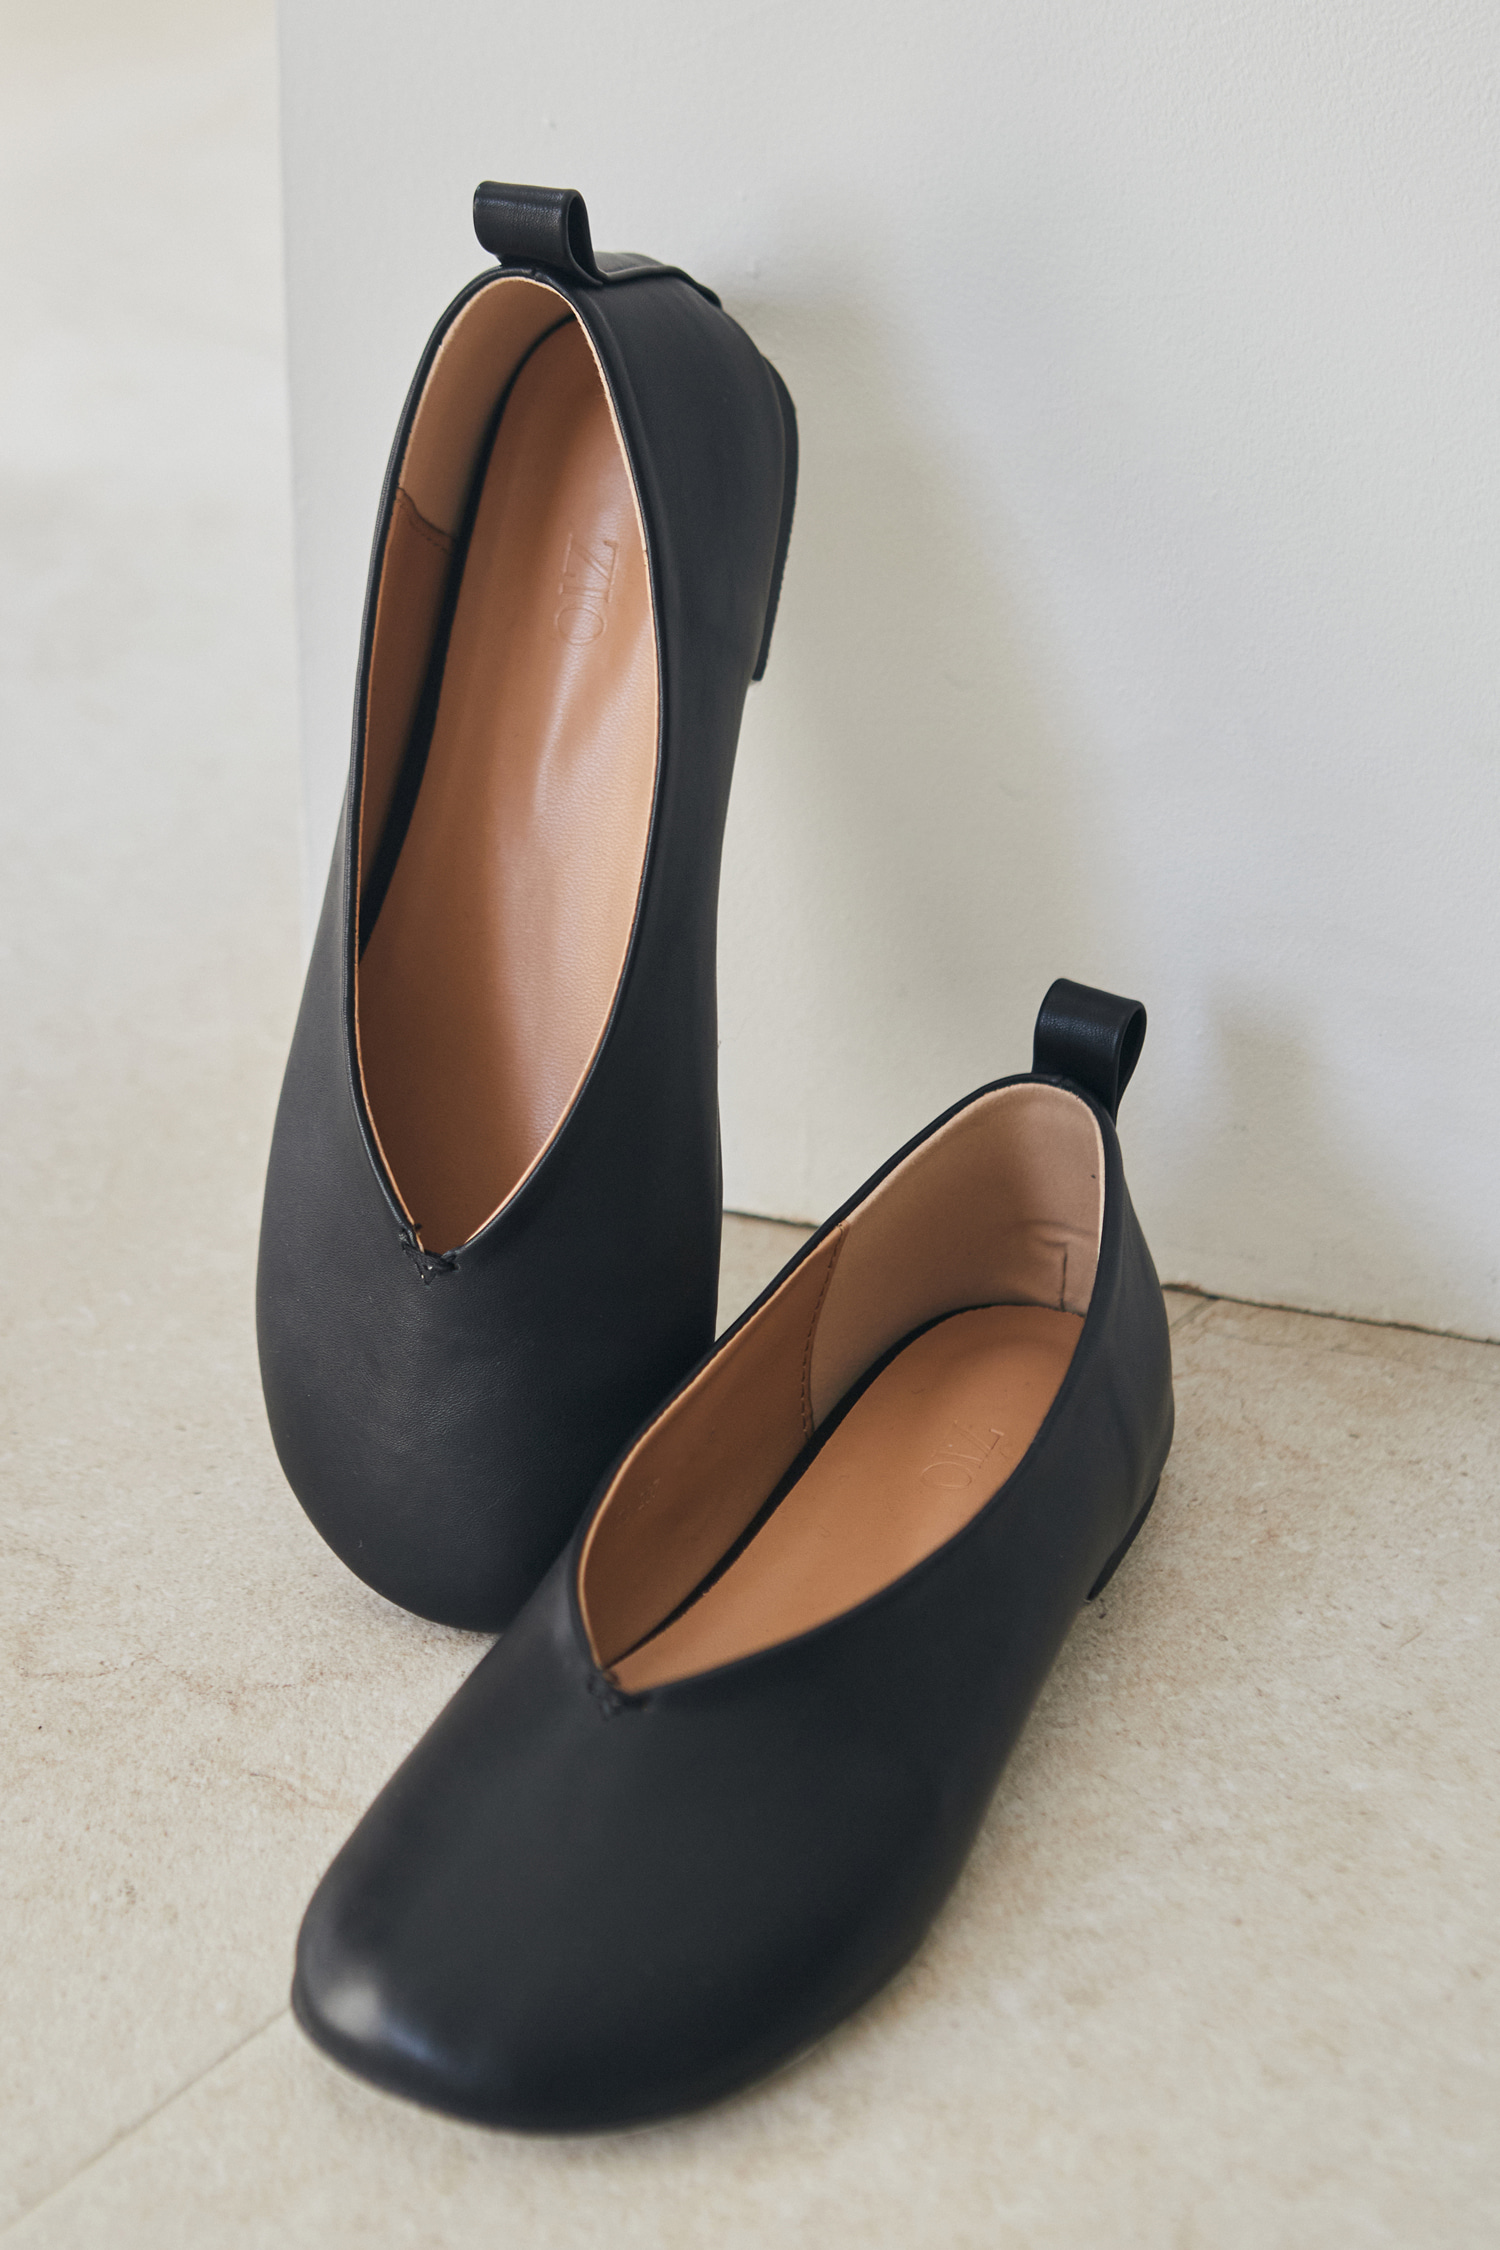 Round flatshoes - black